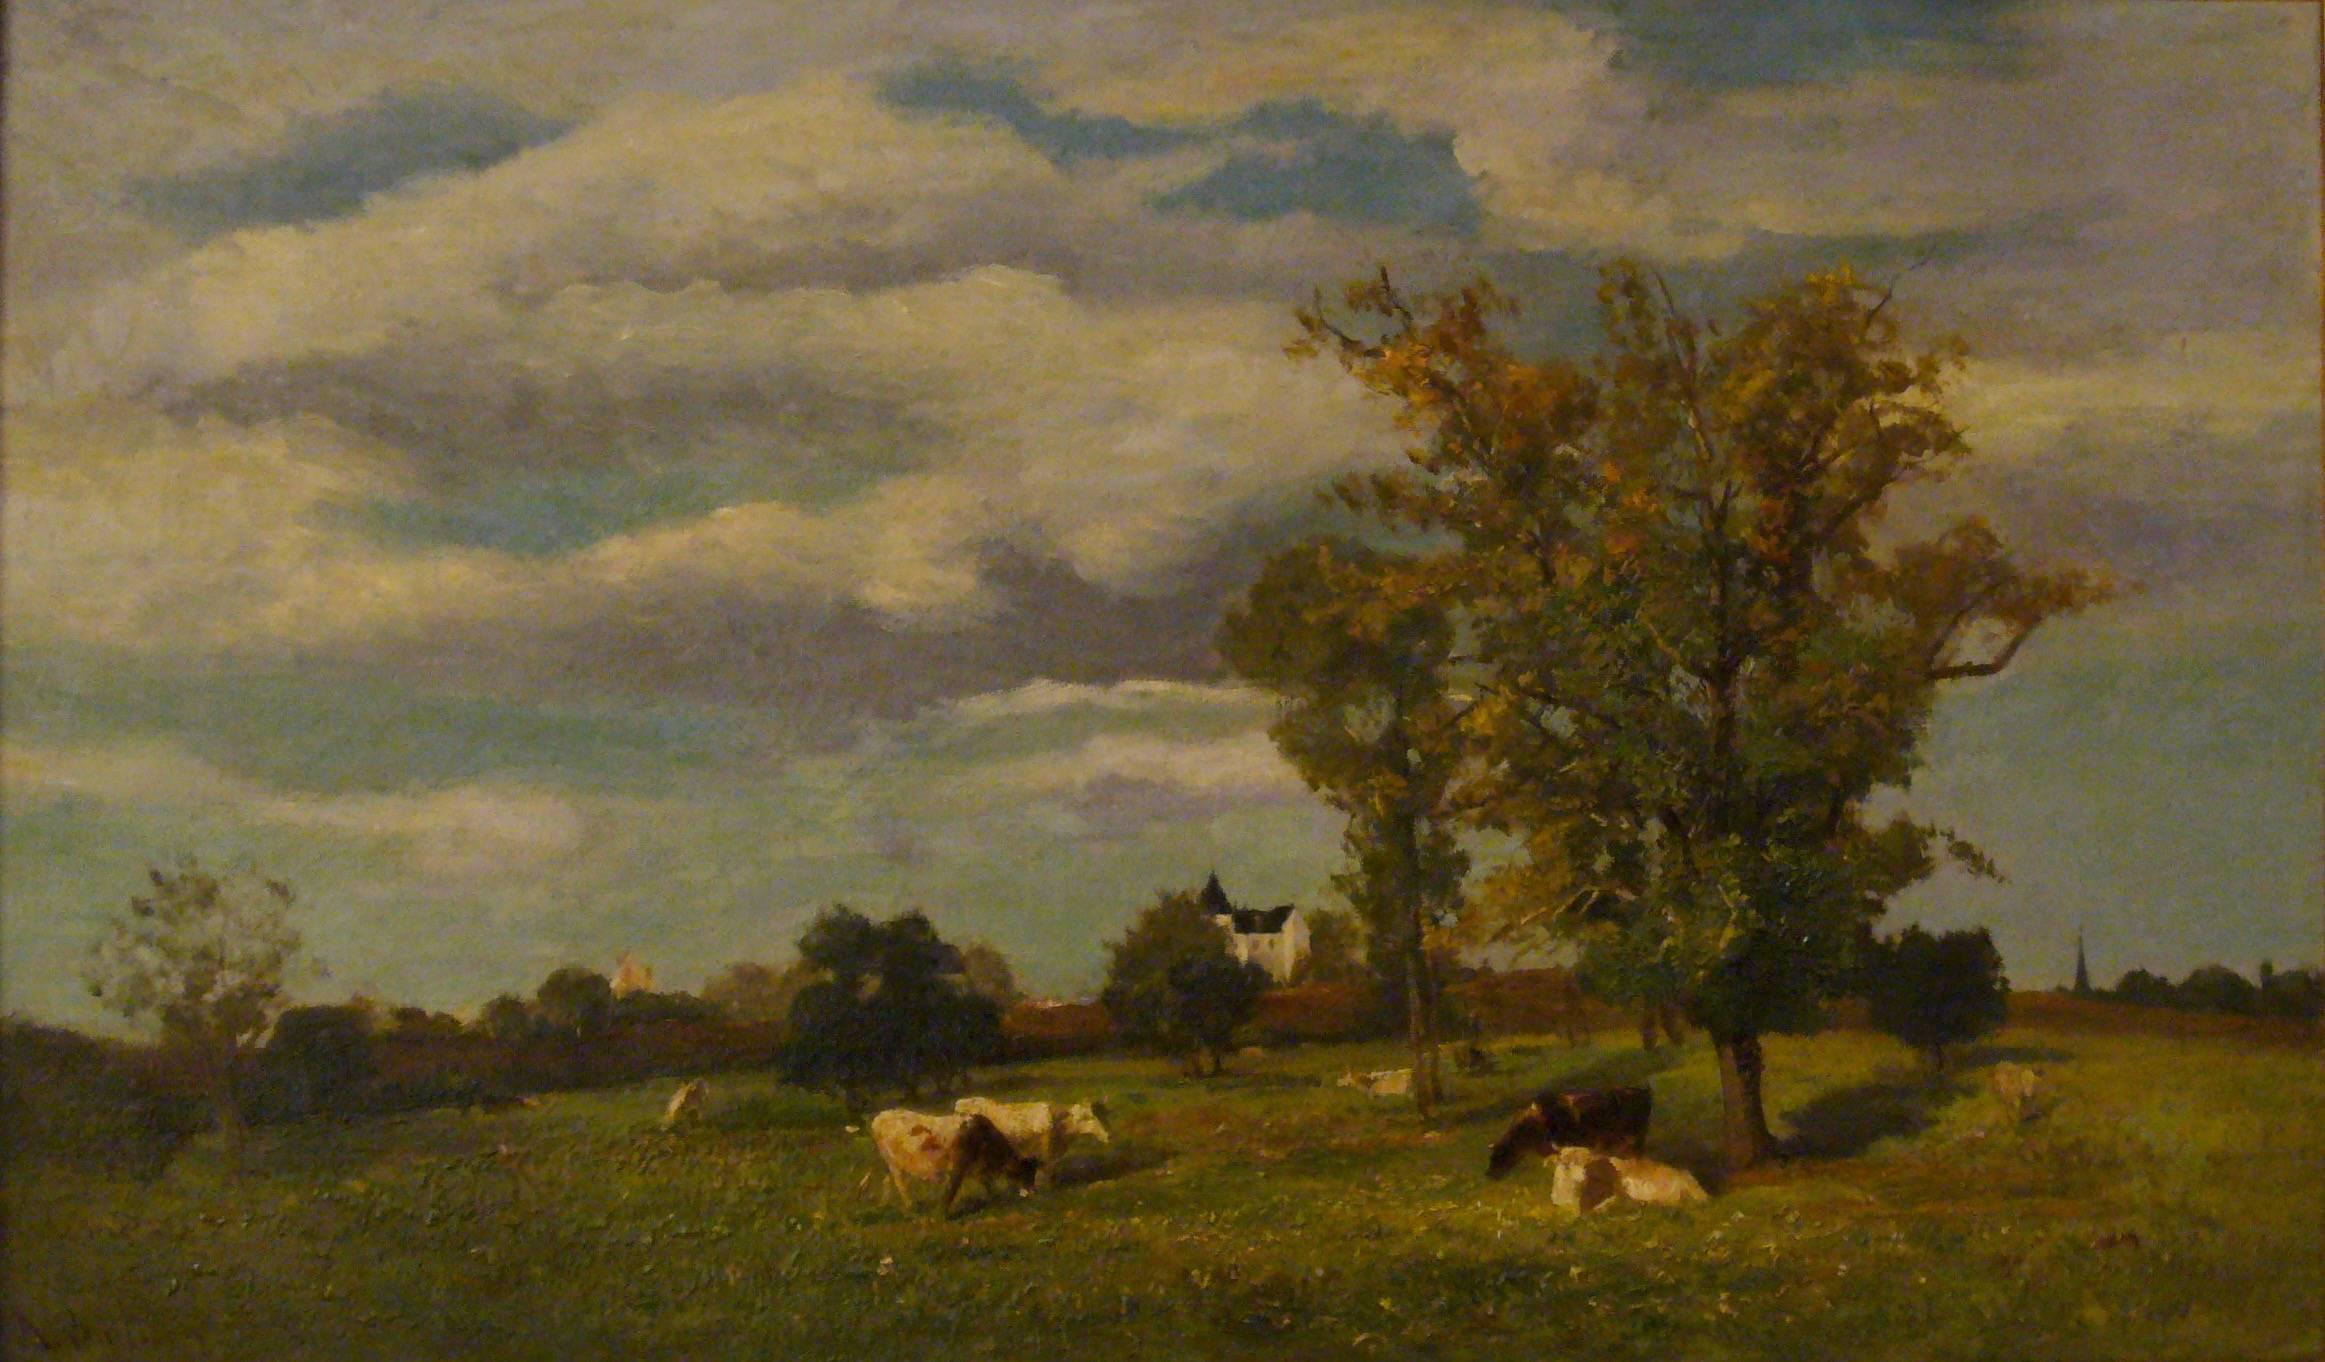 Jacques Alfred Brielman Landscape Painting - Vaches dans un paysage de printemps près d'un chateau